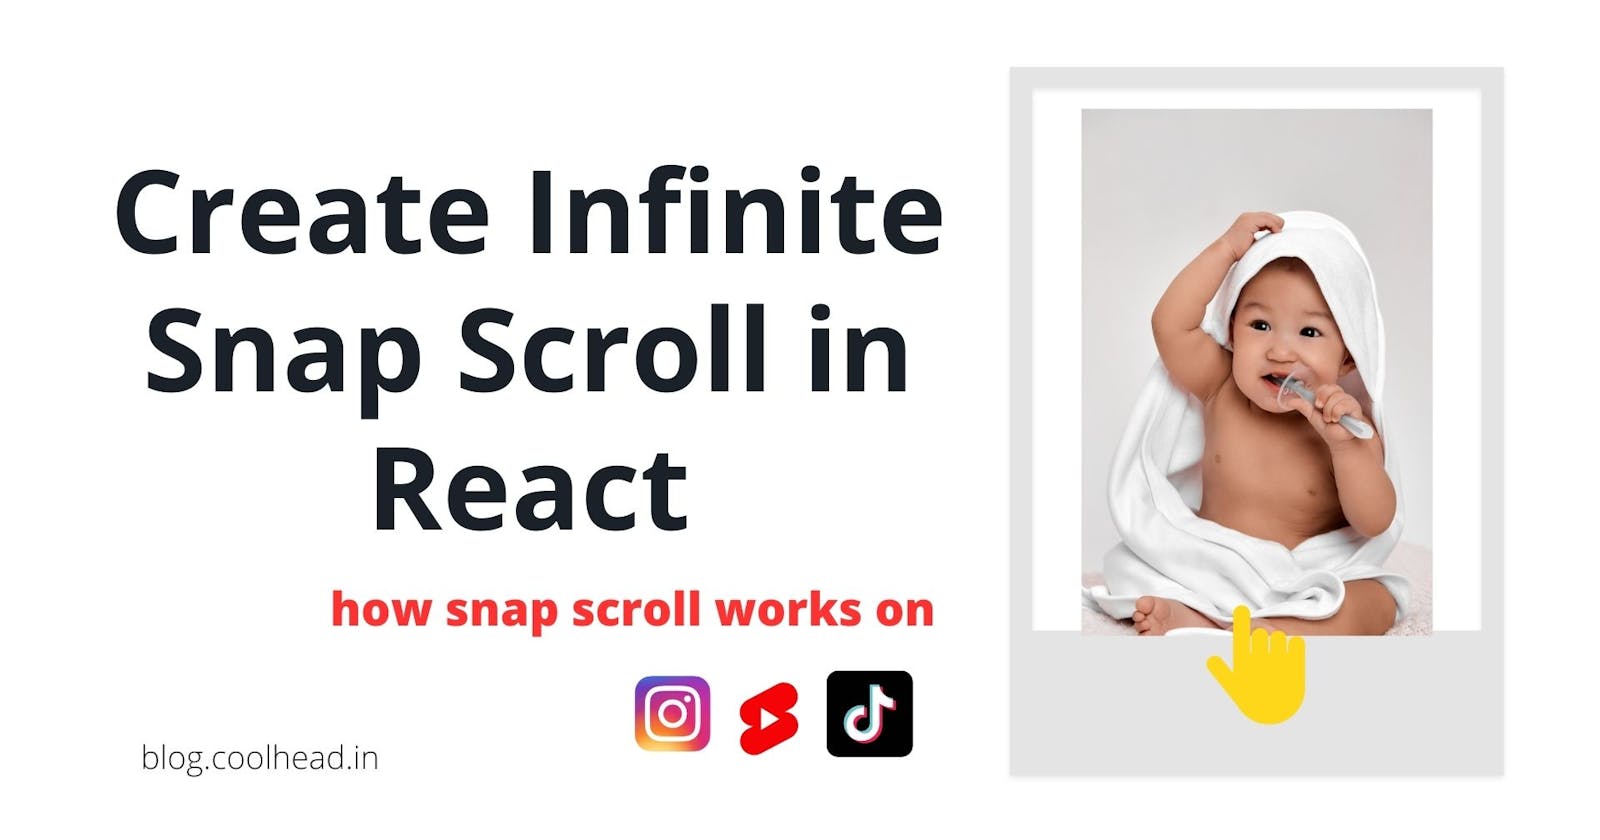 Create Tik-Tok/Youtube Shorts like snap infinite scroll - React